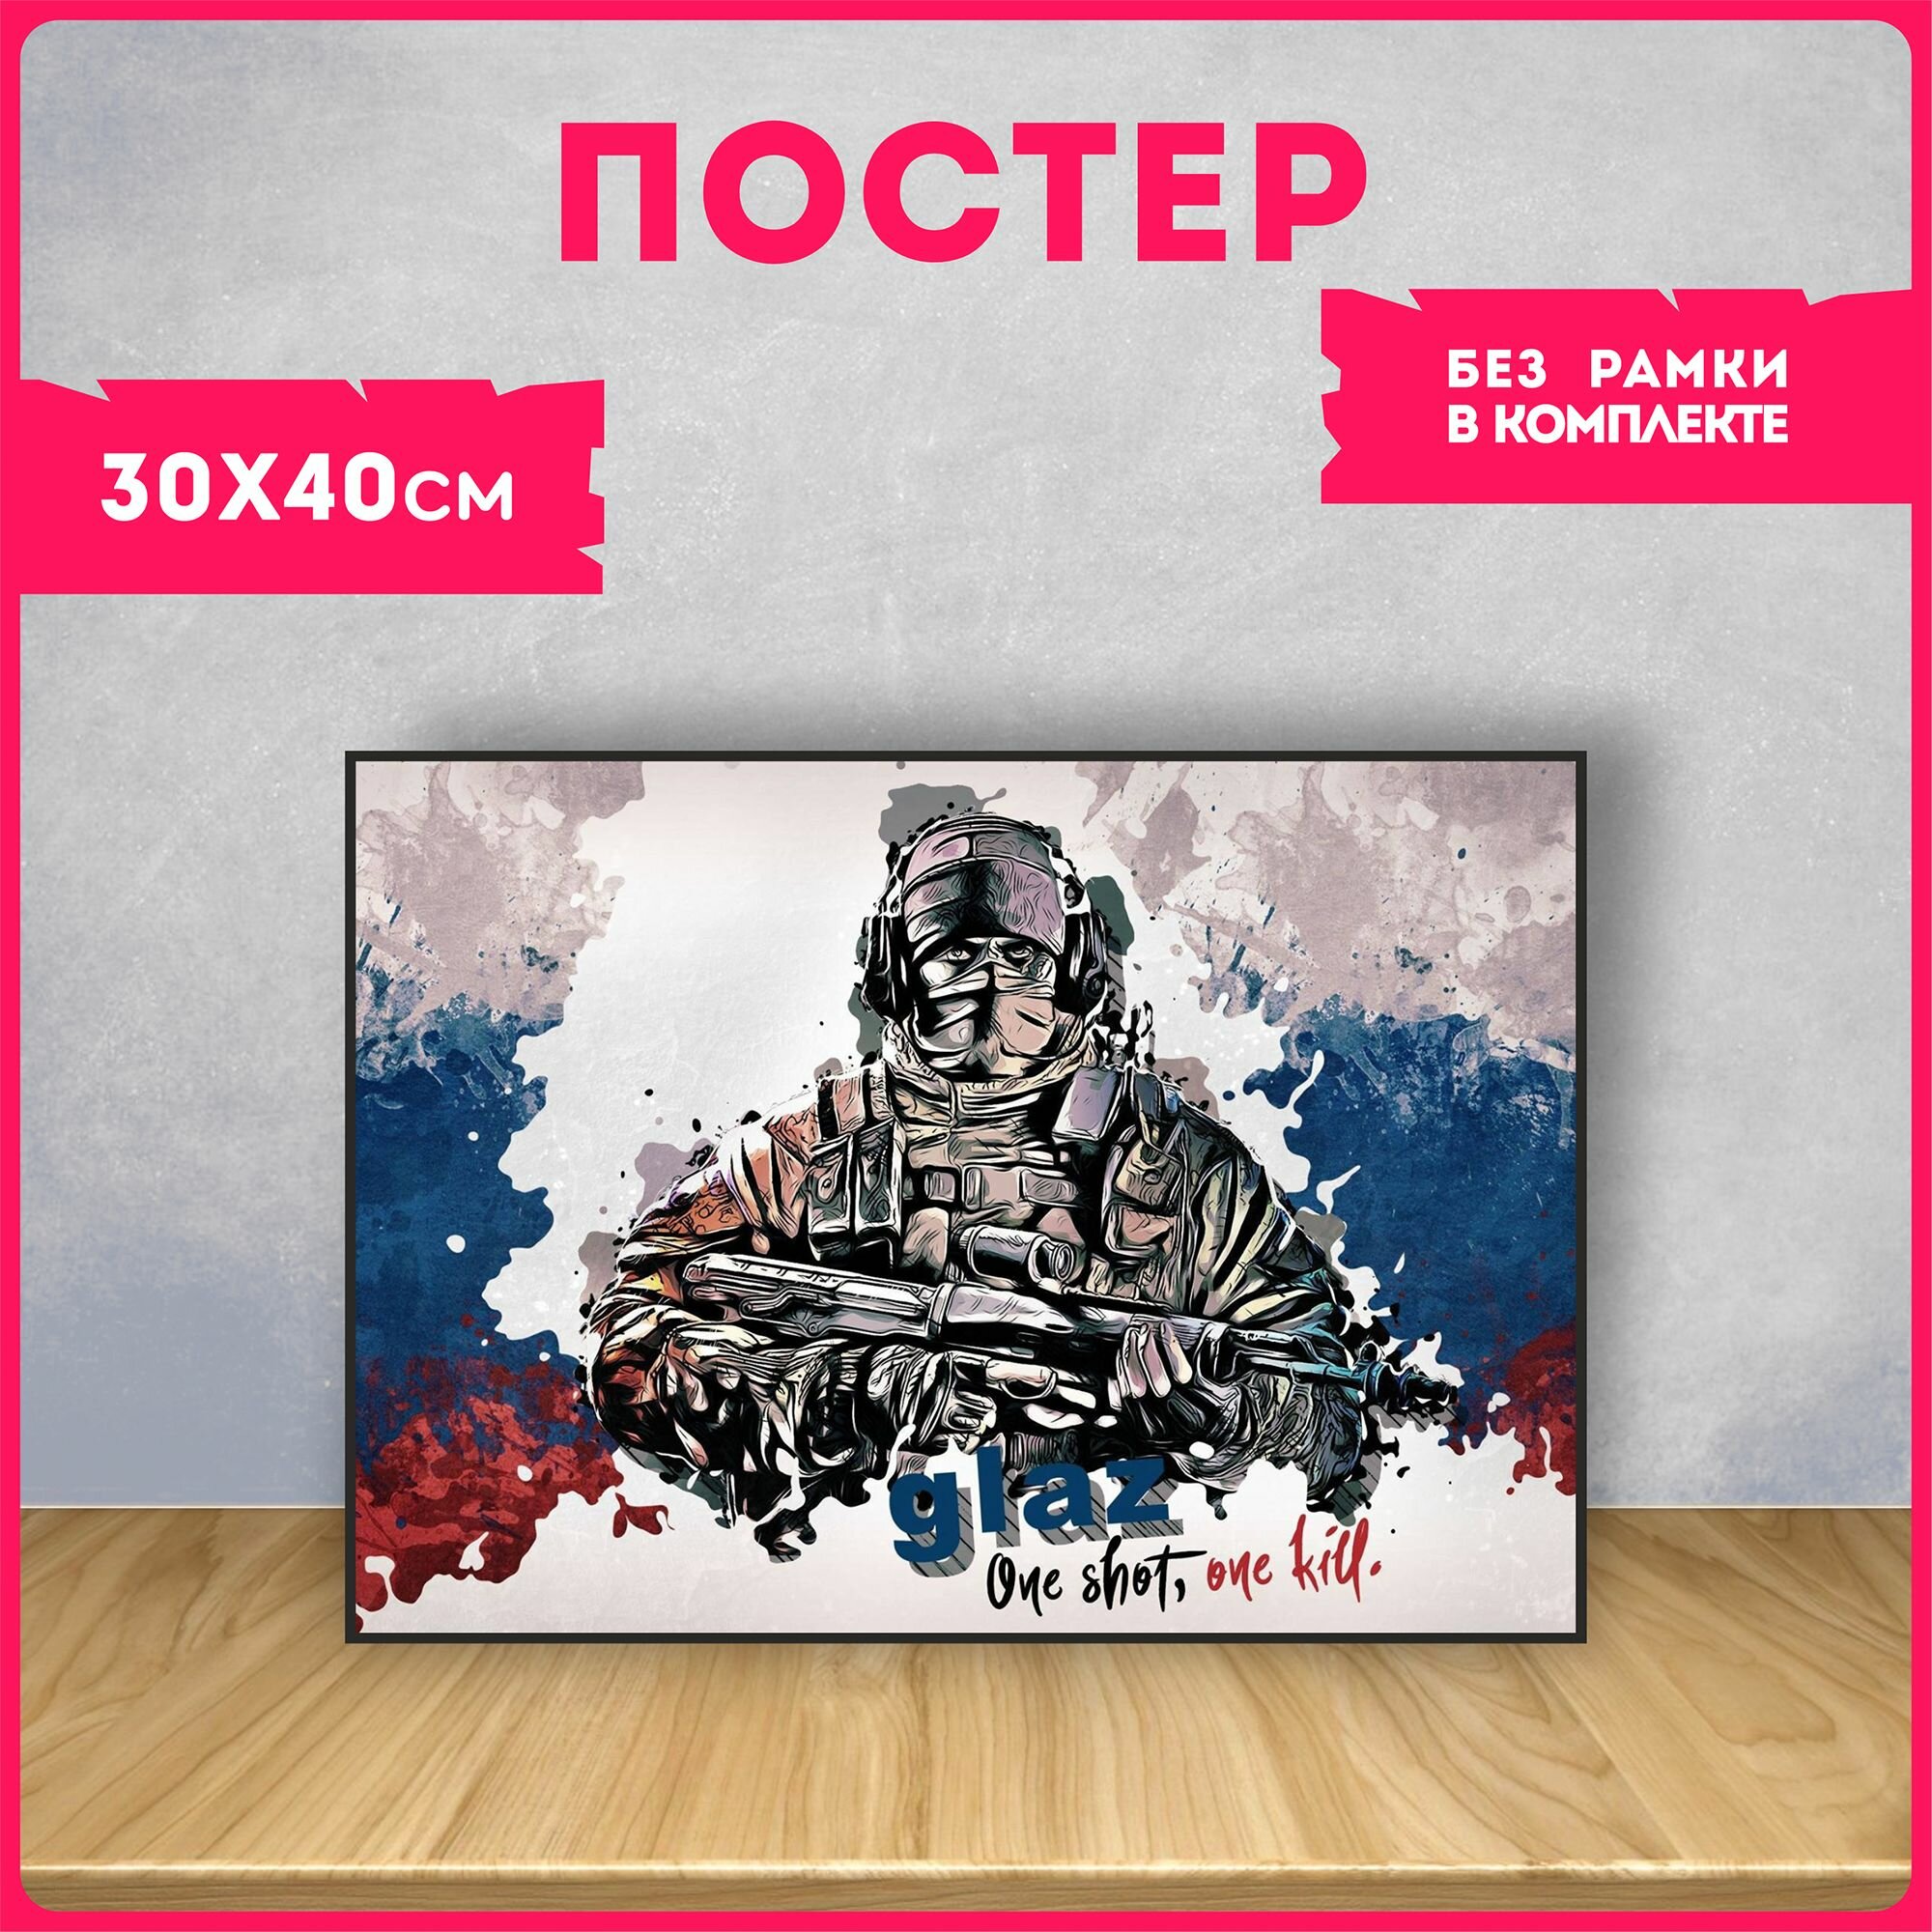 Постеры на стену интерьерные россия вагнер чвк